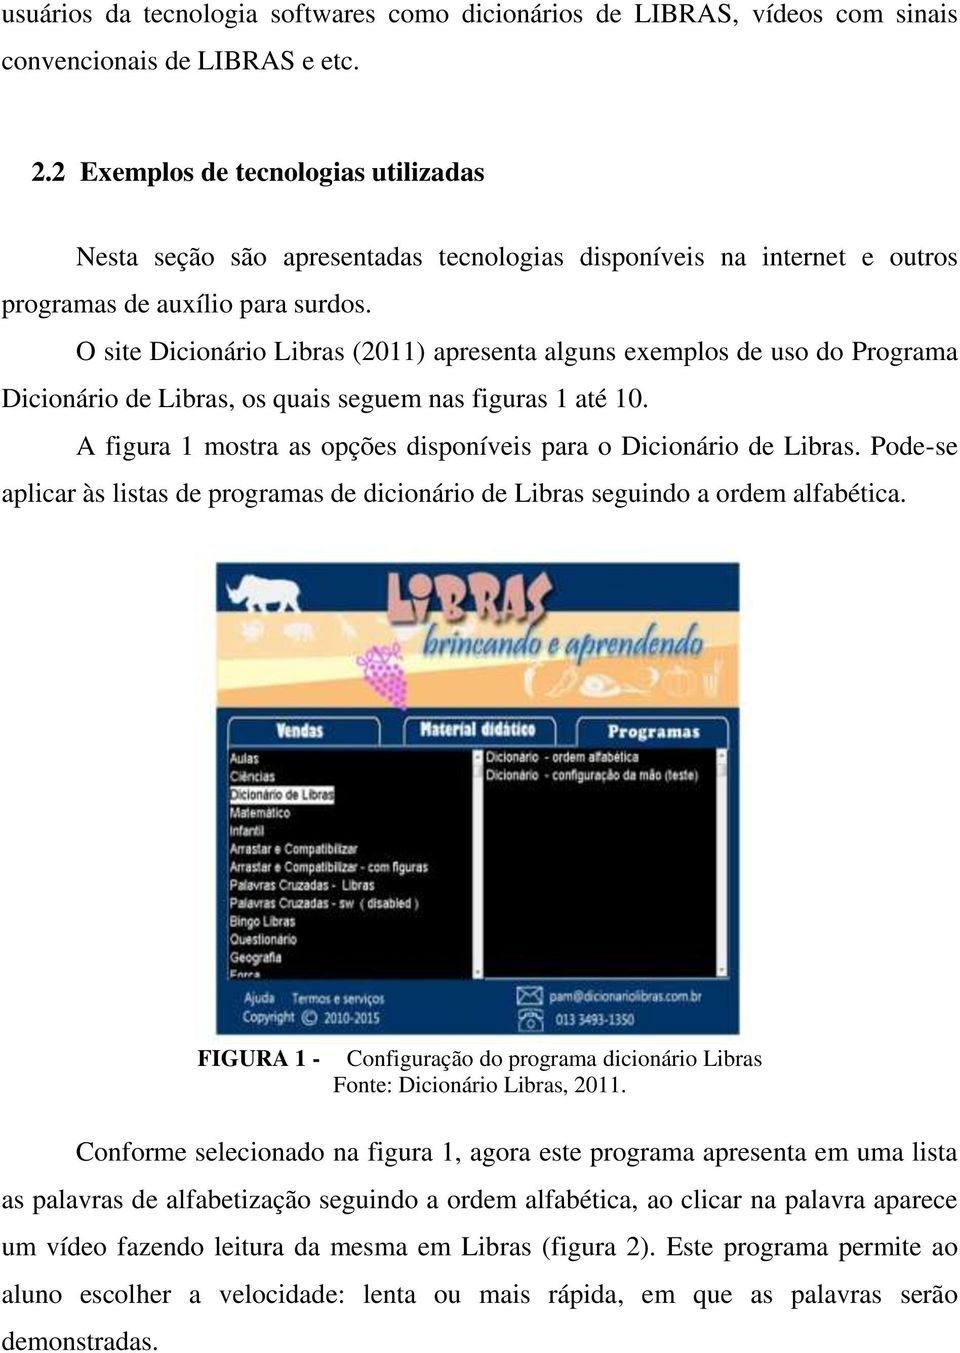 O site Dicionário Libras (2011) apresenta alguns exemplos de uso do Programa Dicionário de Libras, os quais seguem nas figuras 1 até 10.